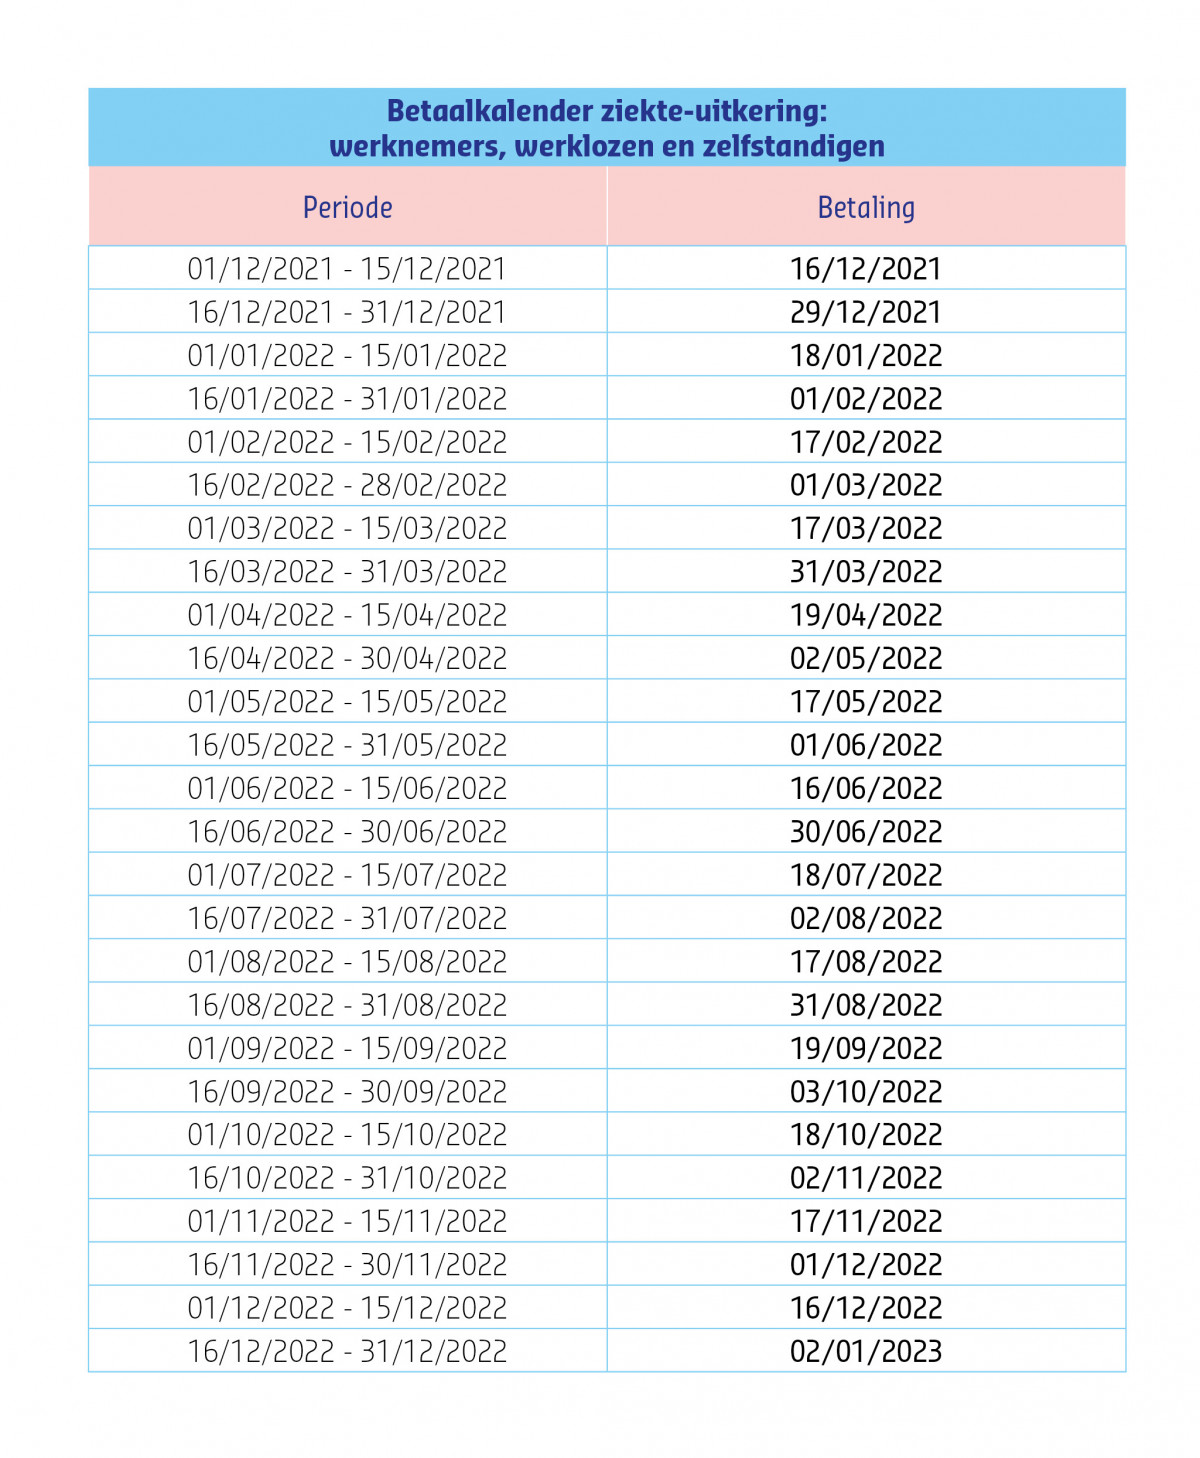 Tabel betaalkalender ziekte-uitkering